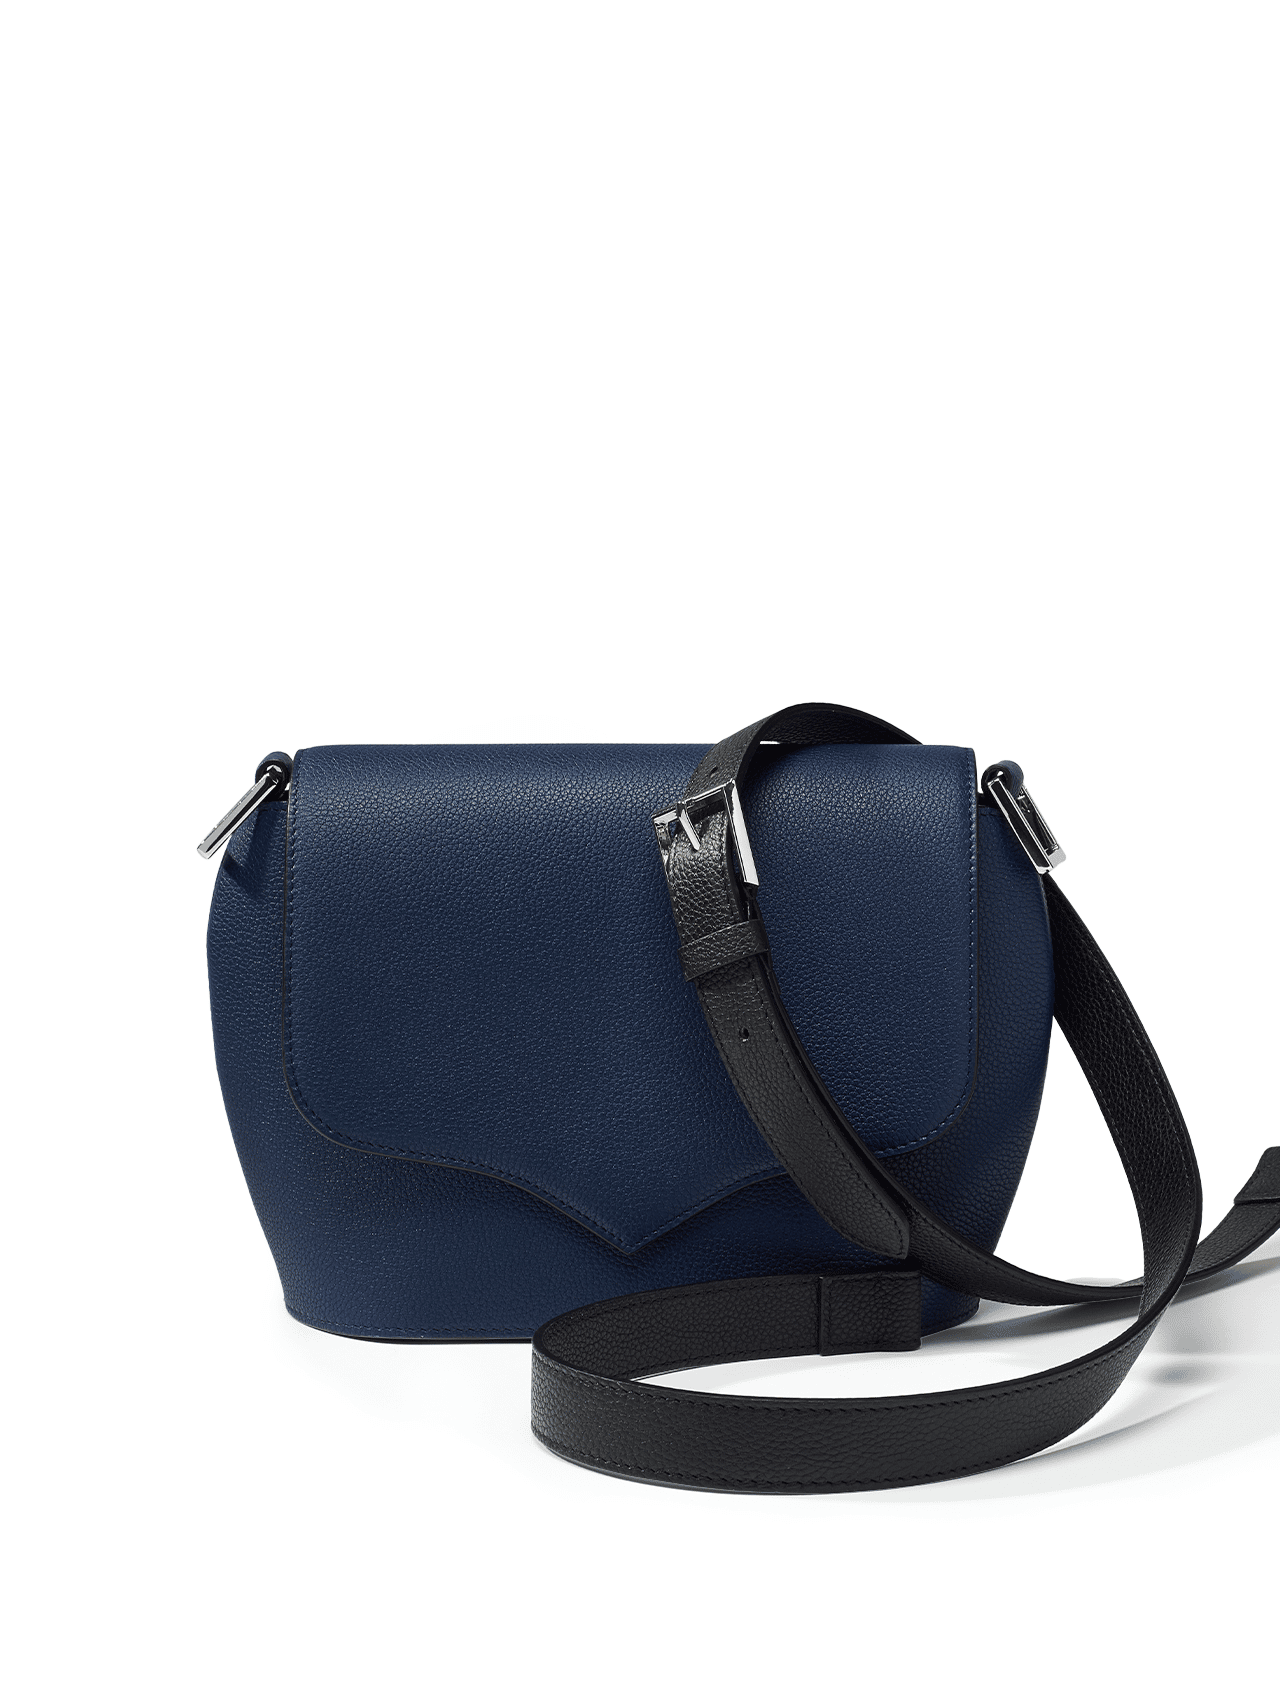 bag leather jean rousseau blue black